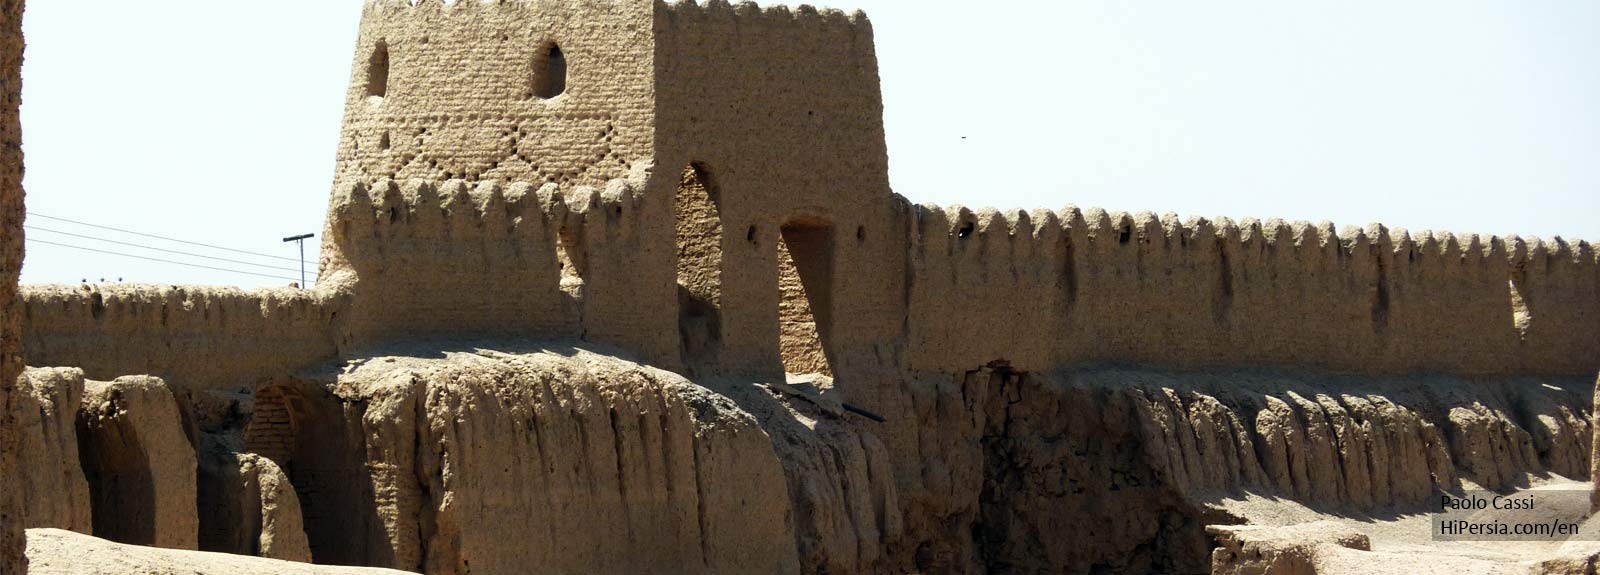 Ghurtan Citadel, the ancient citadel in the heart of desert